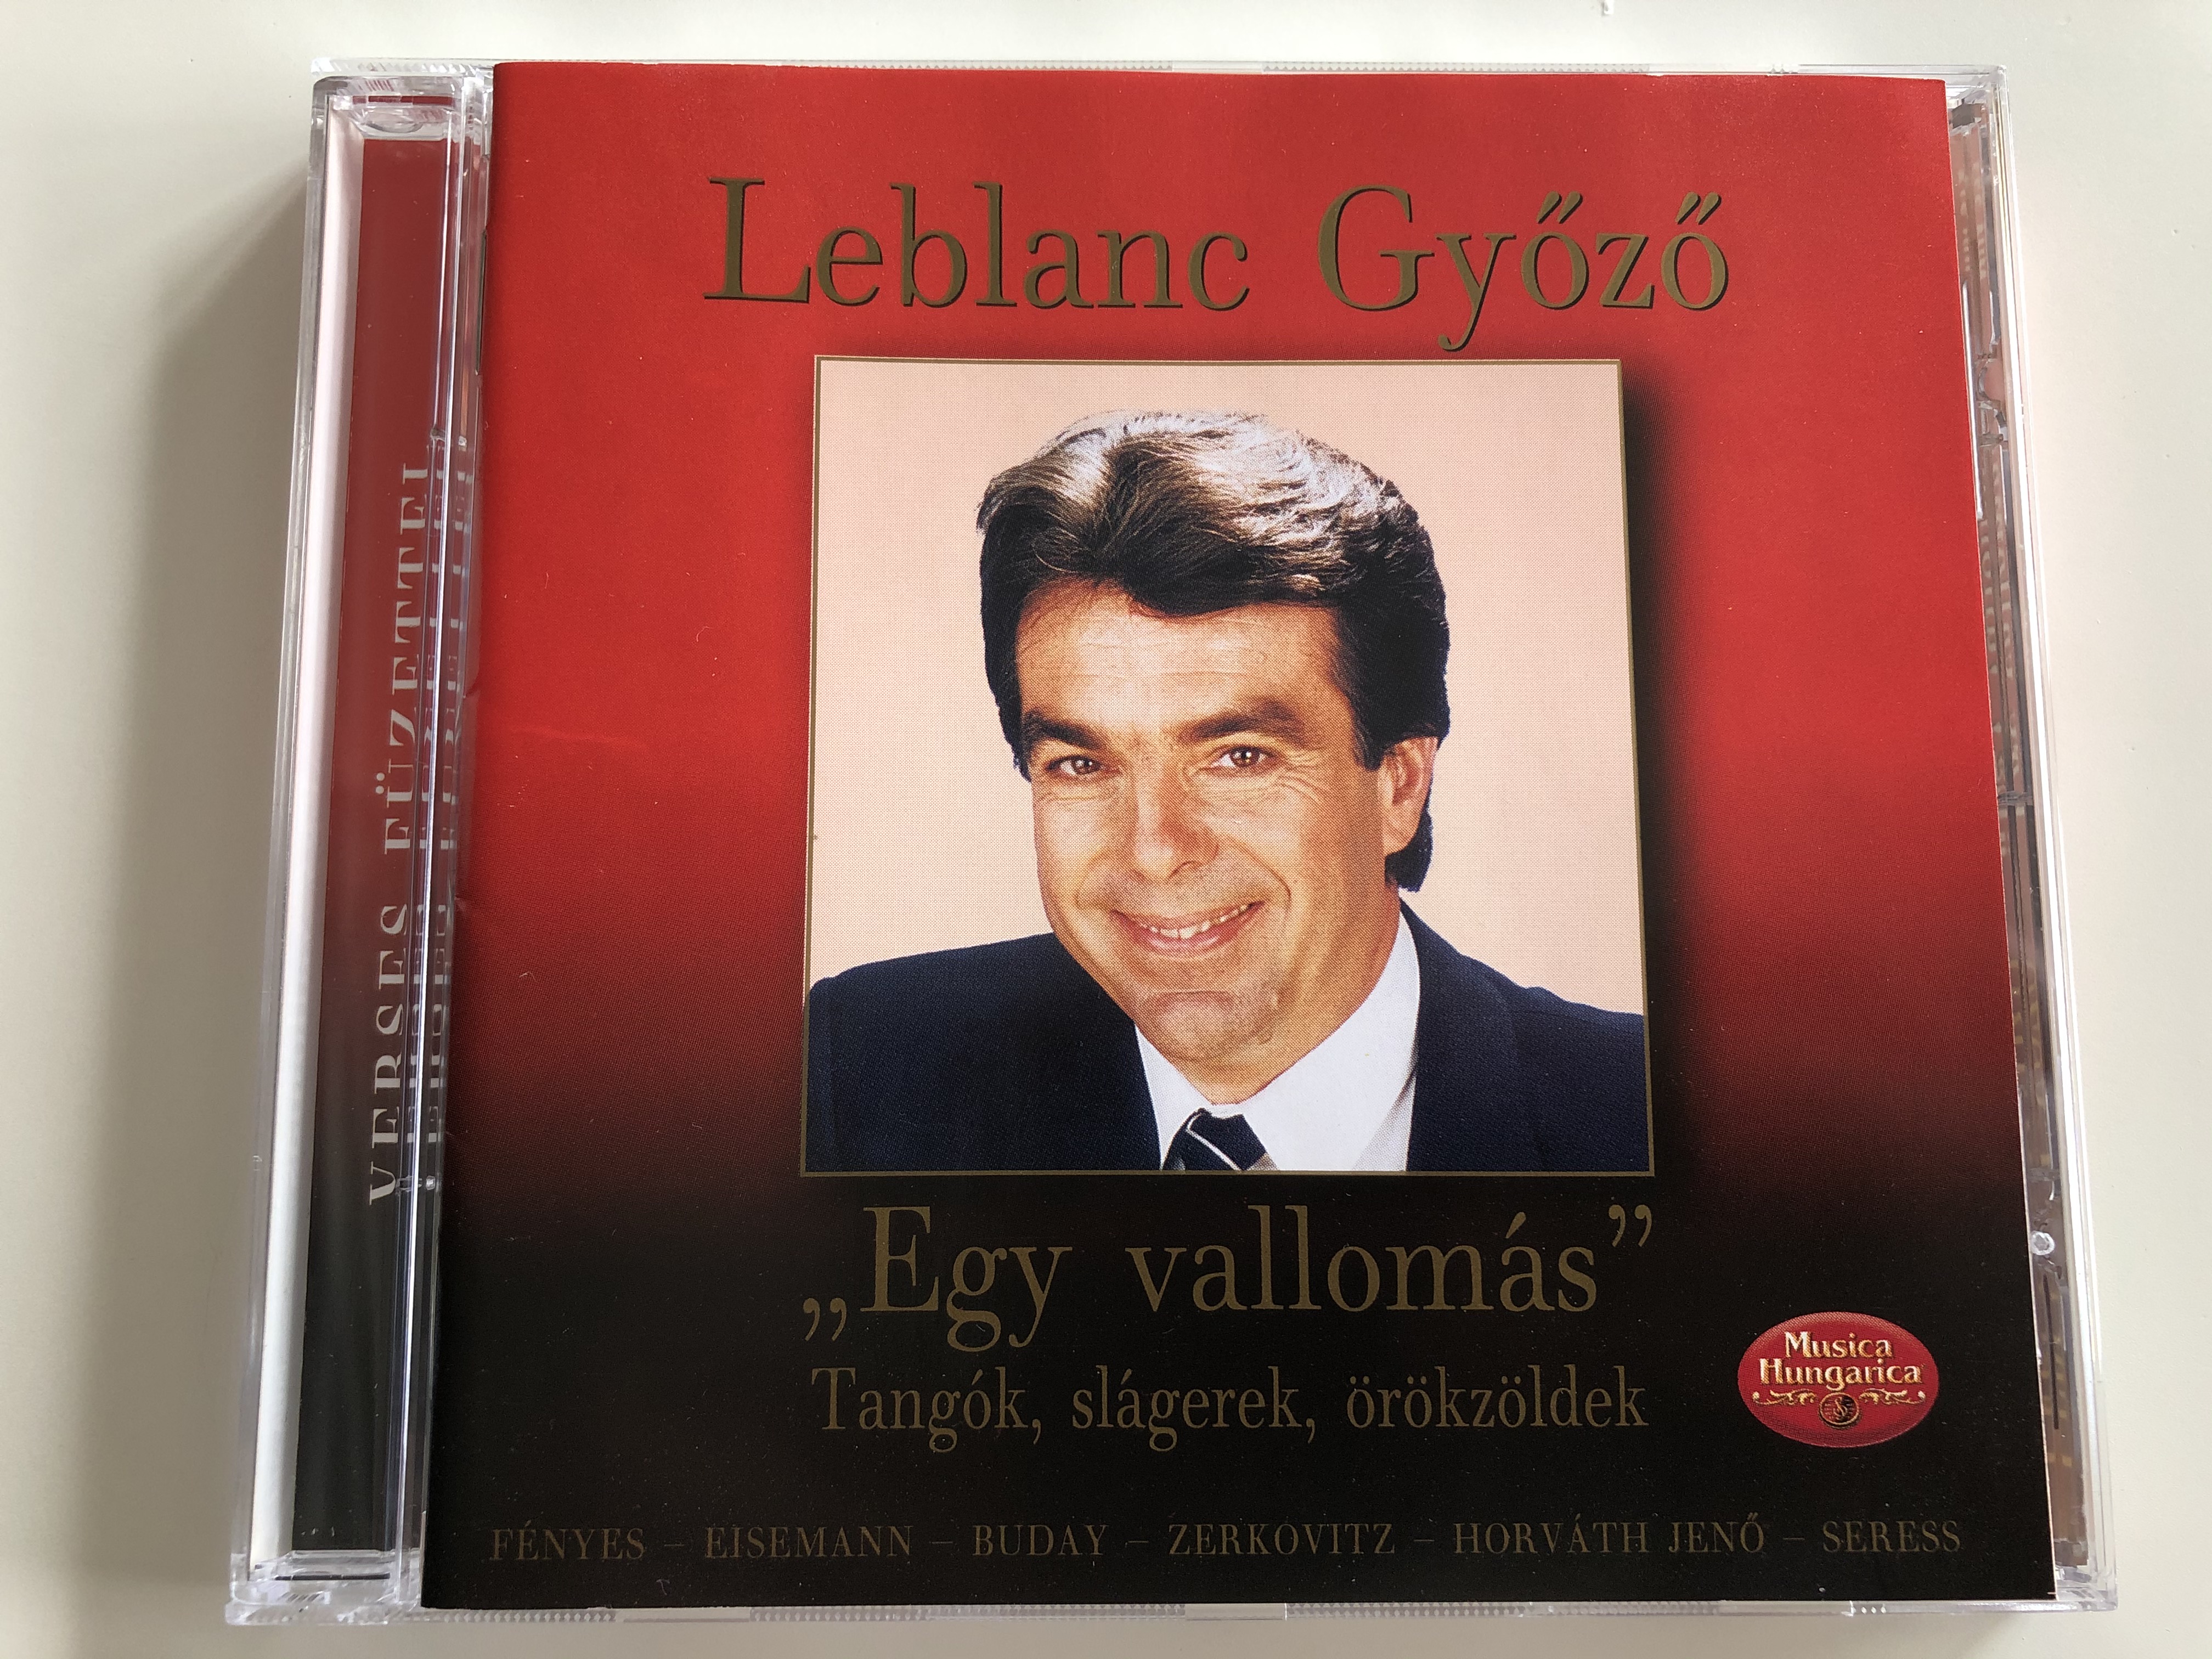 leblanc-gy-z-egy-vallomas-tangok-slagerek-orokzoldek-fenyes-eisemann-buday-zerkovitz-horvath-jeno-seress-musica-hungarica-ltd.-audio-cd-2002-stereo-mha-372-1-.jpg